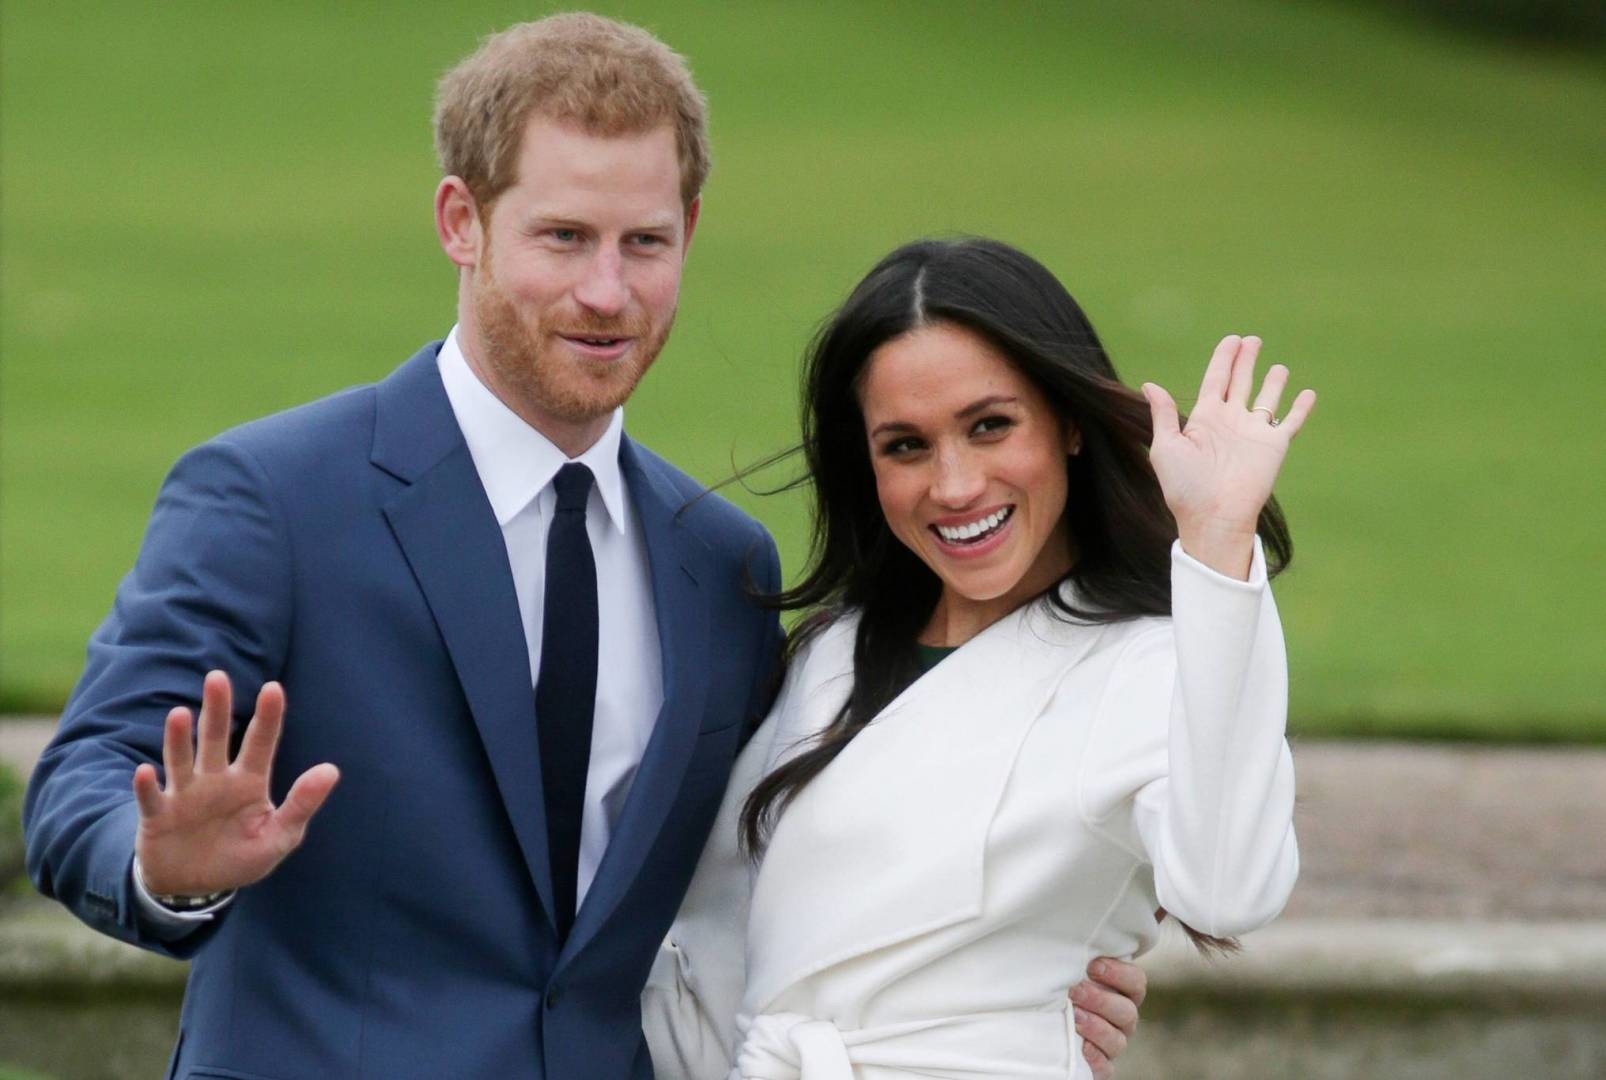 الأمير هاري وزوجته يعلنان عن تنازلهما عن دورهما في العائلة البريطانية المالكة 